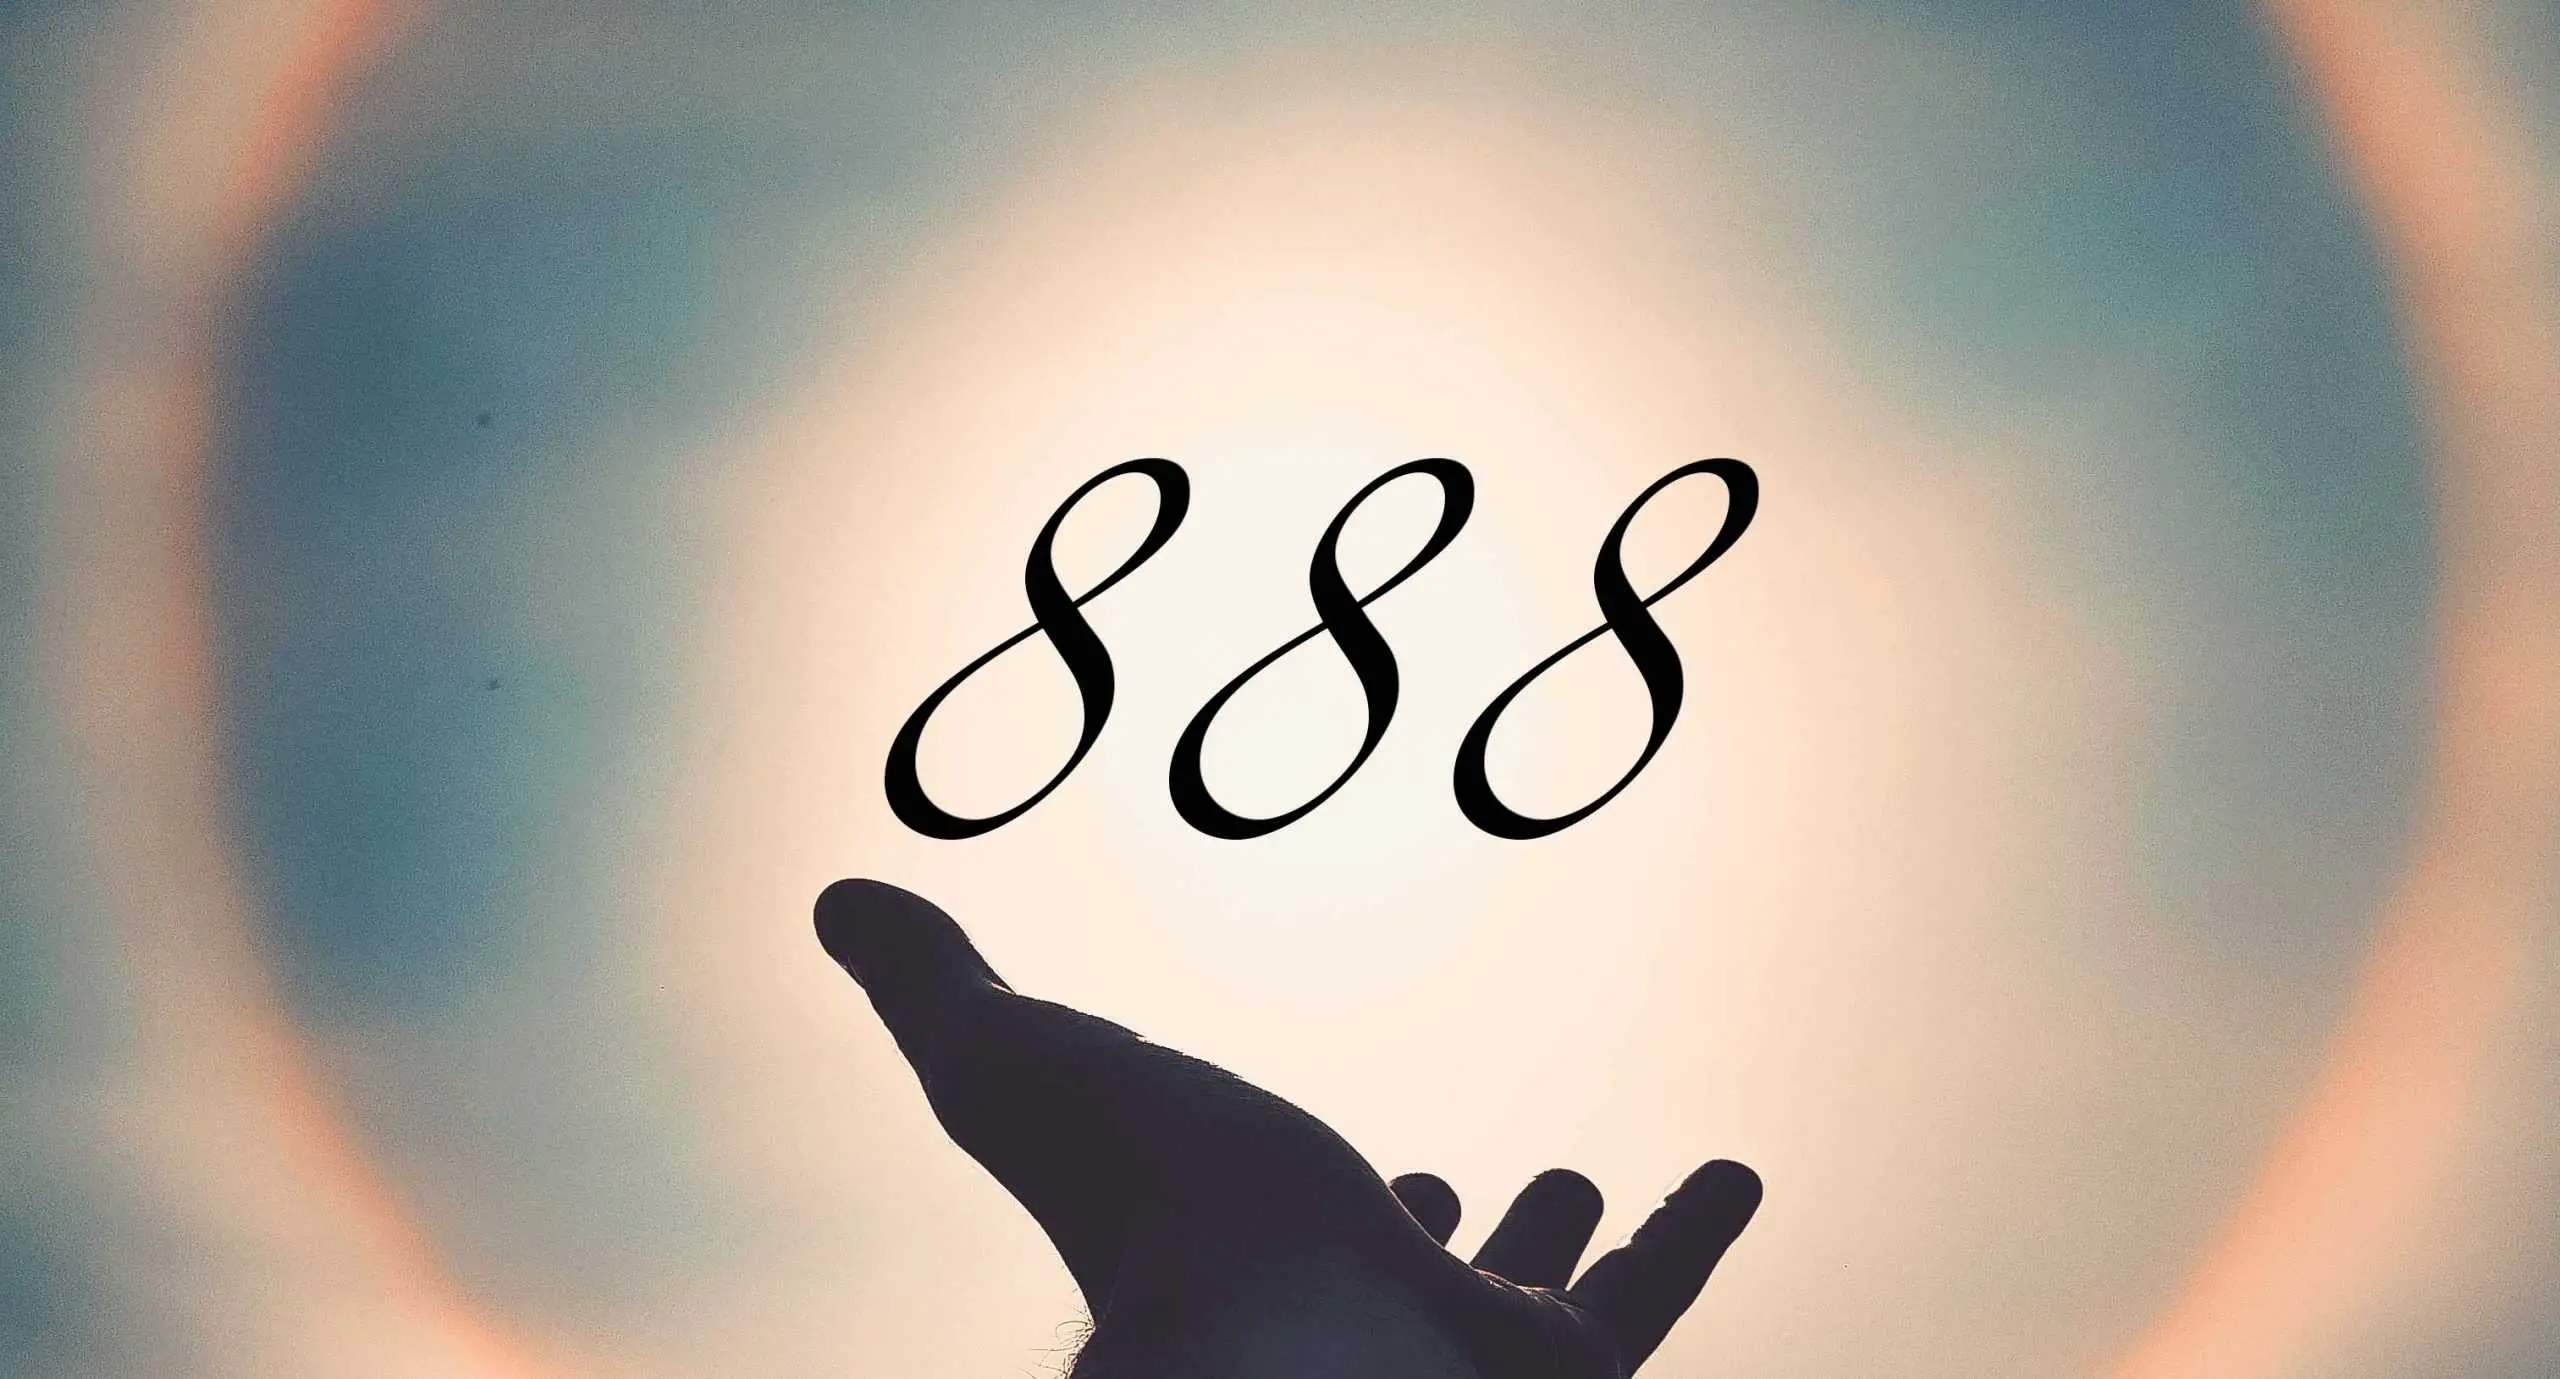 Signification du nombre 888